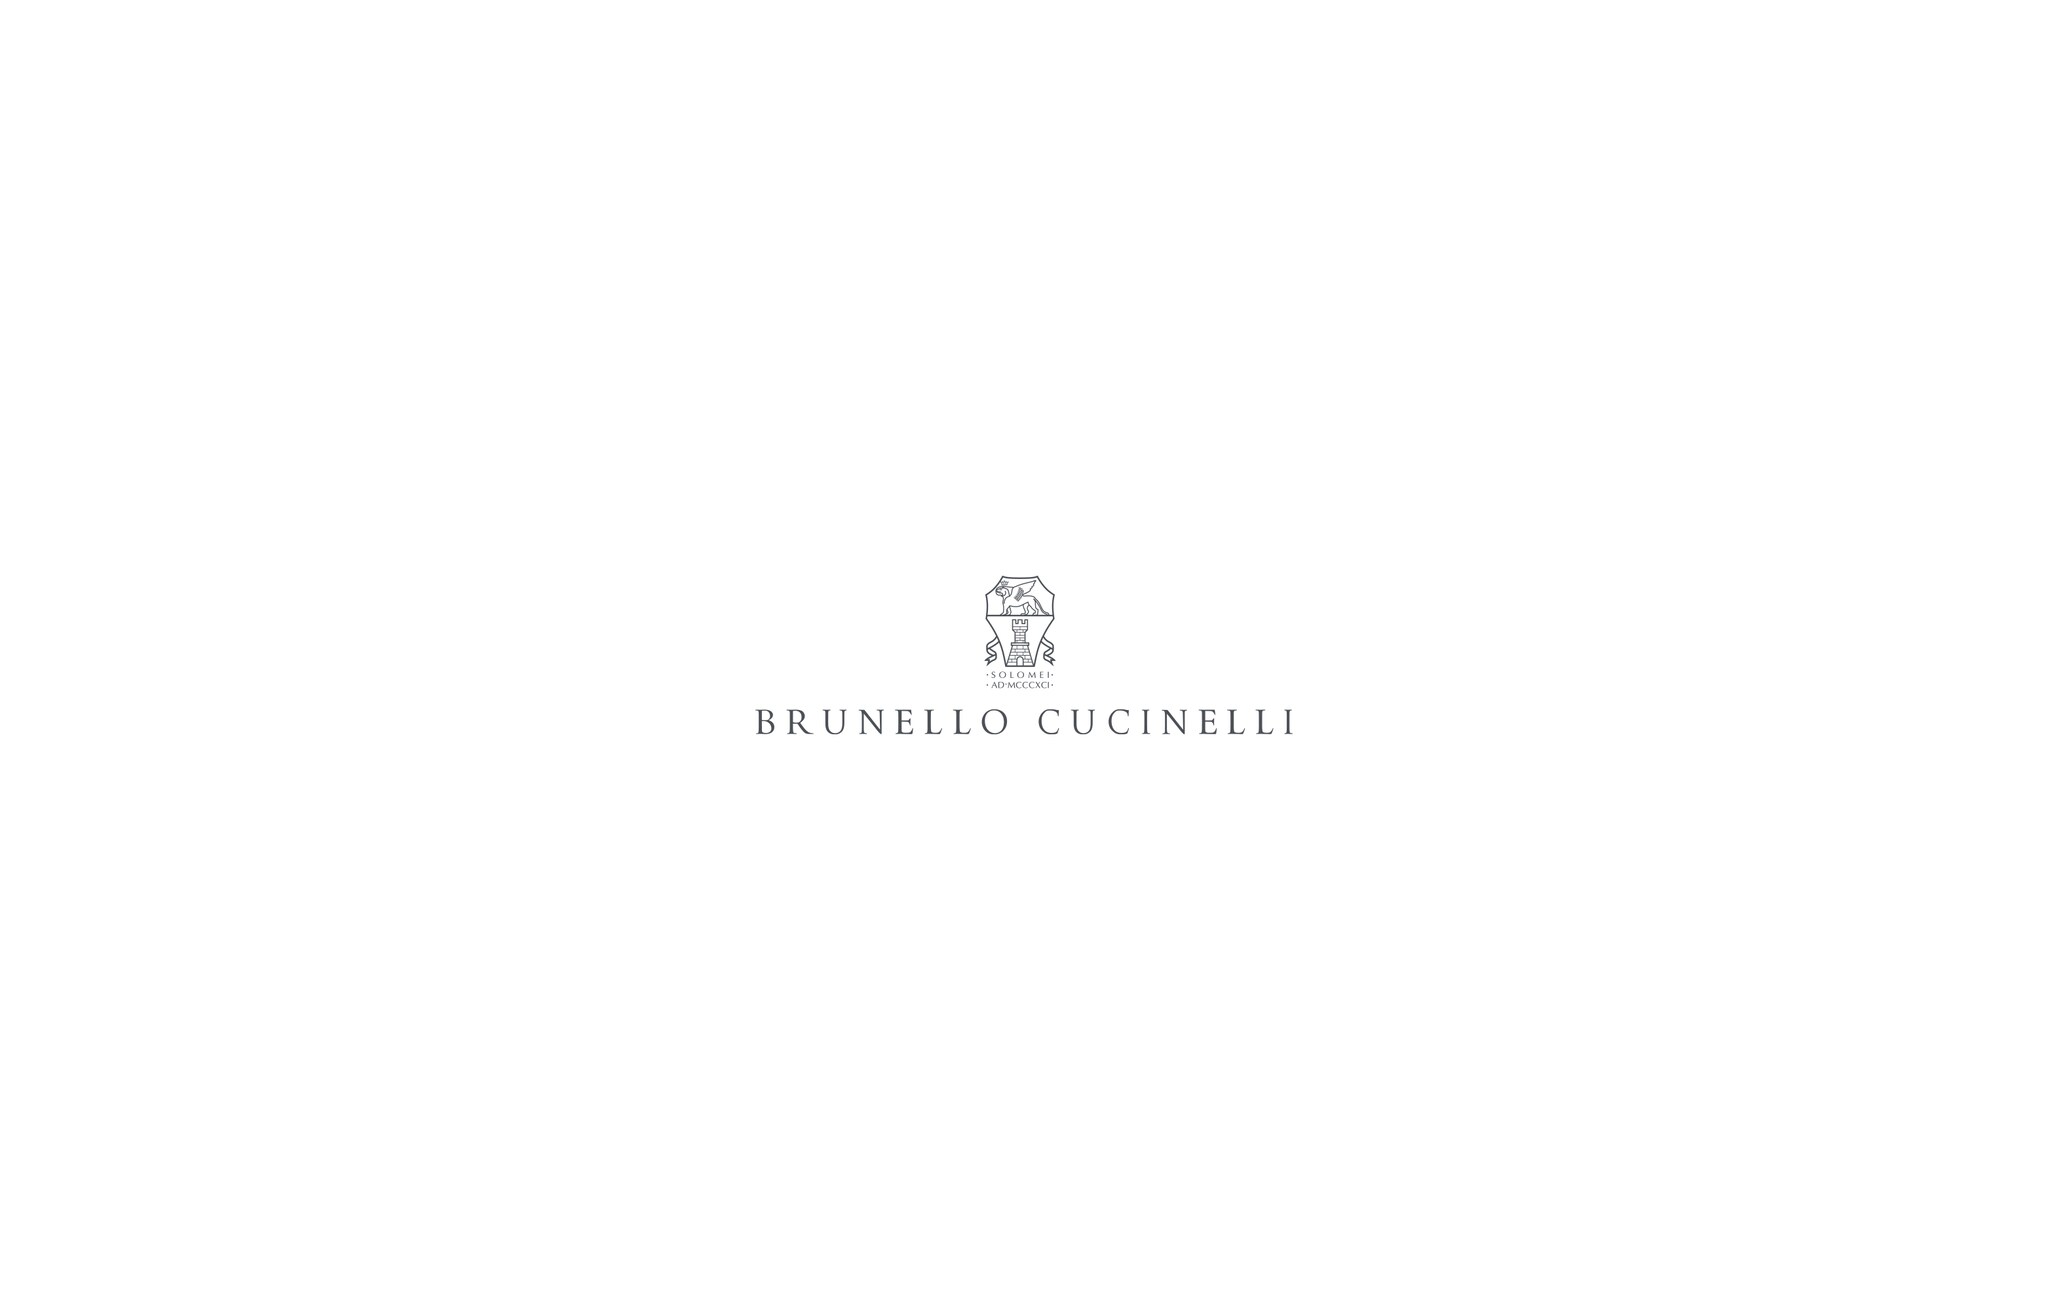  OPERA sweater Anthracite Woman - Brunello Cucinelli 